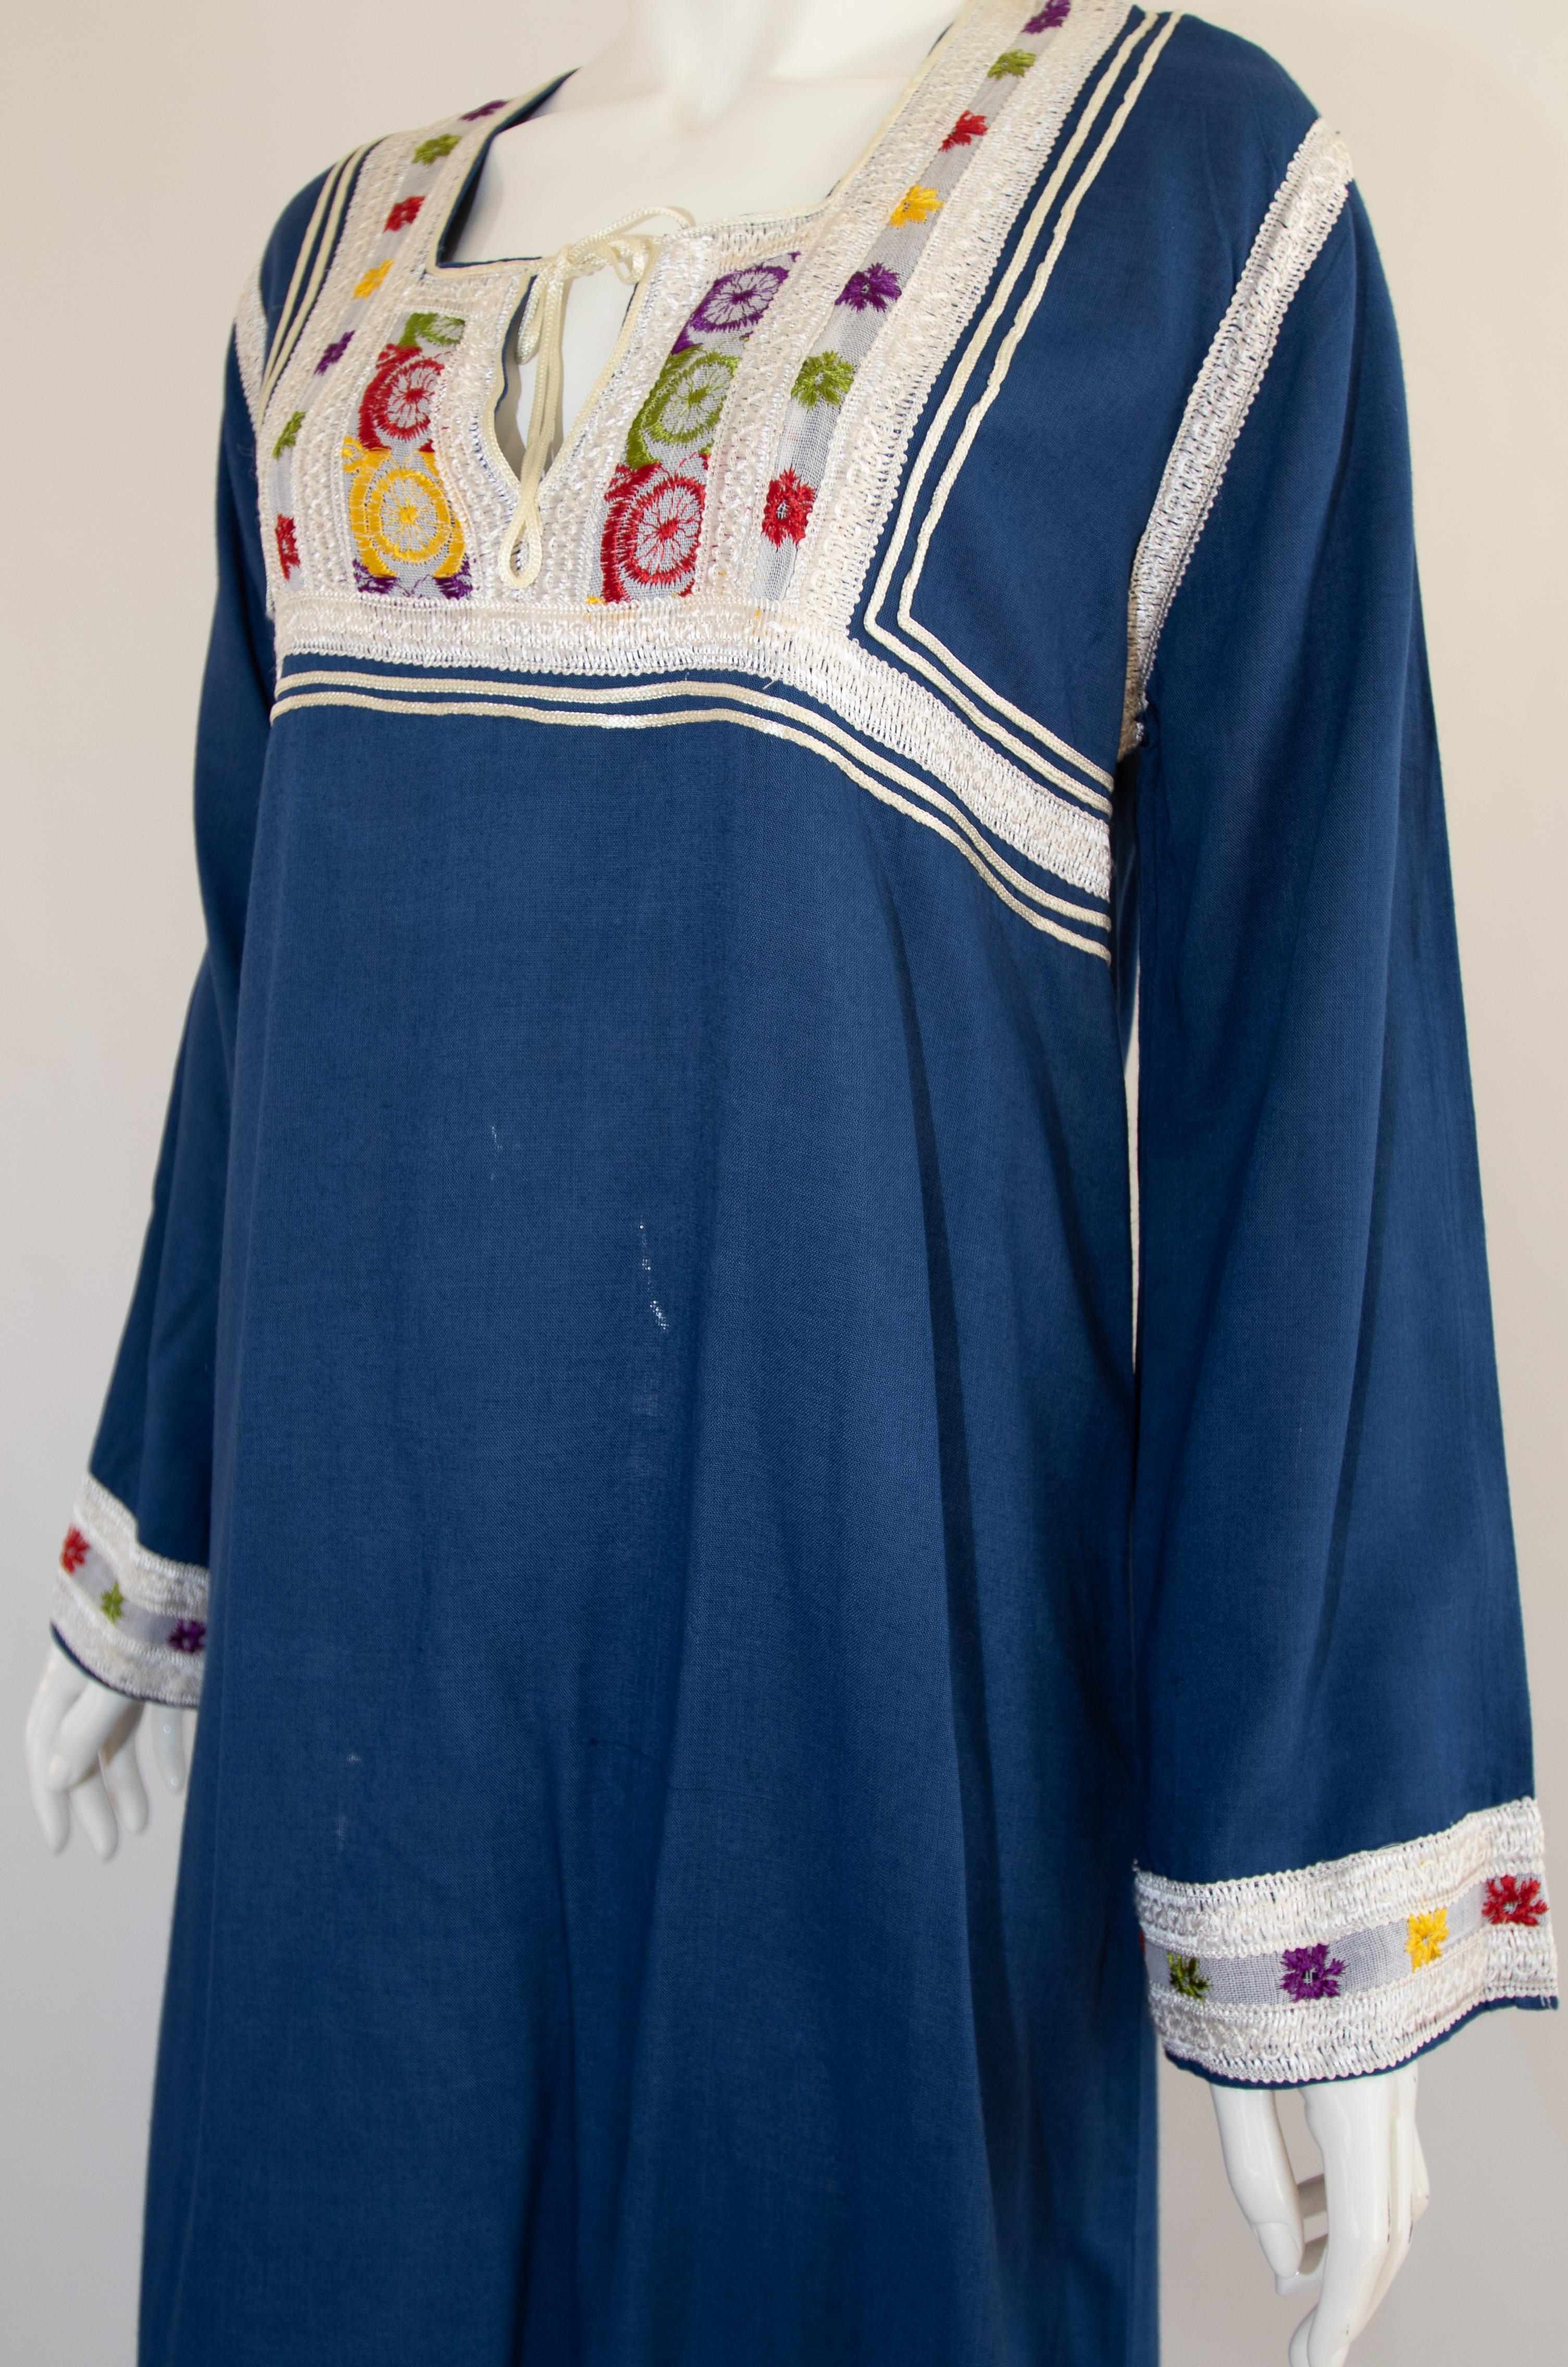 Moroccan Vintage Blue Caftan, 1970 Maxi Dress Kaftan by Glenn Boston Size M For Sale 5